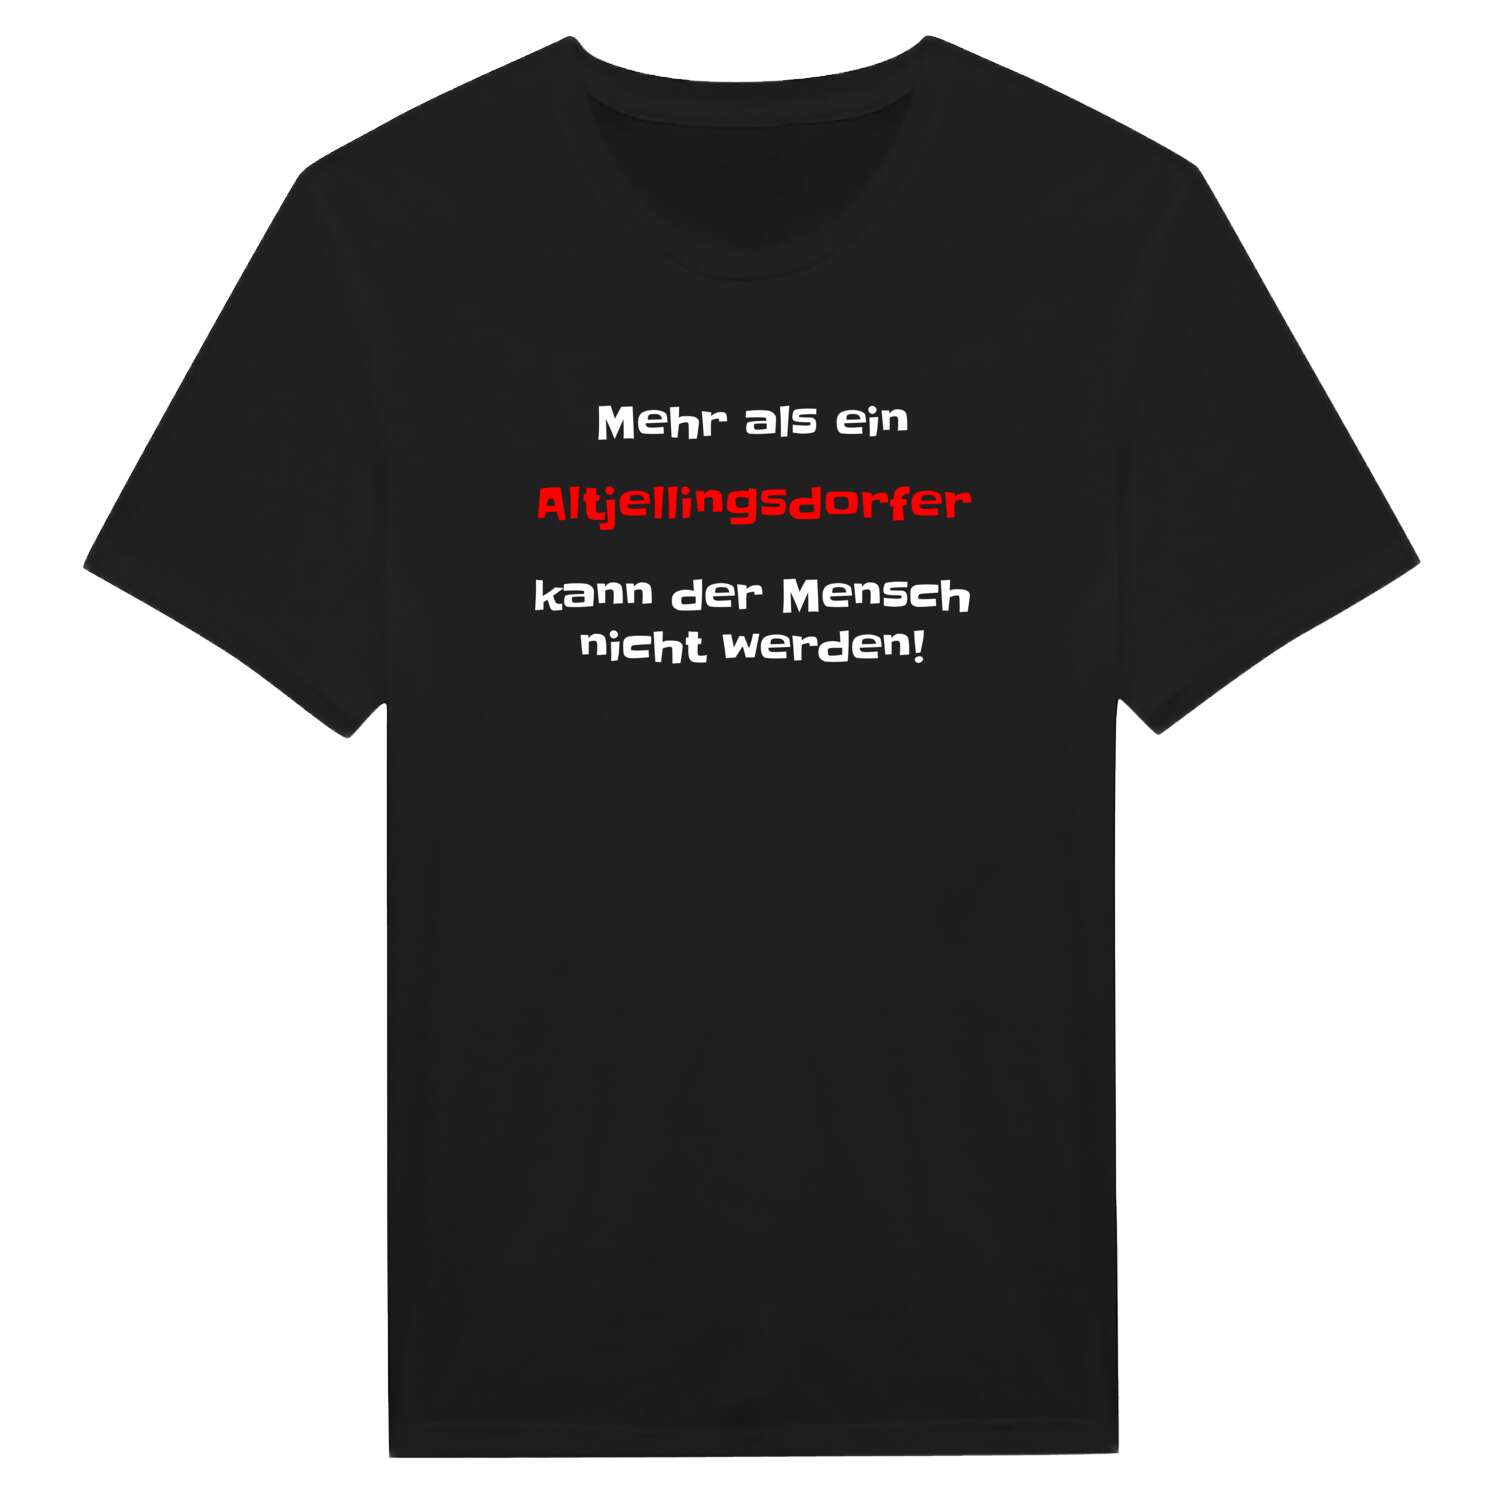 Altjellingsdorf T-Shirt »Mehr als ein«